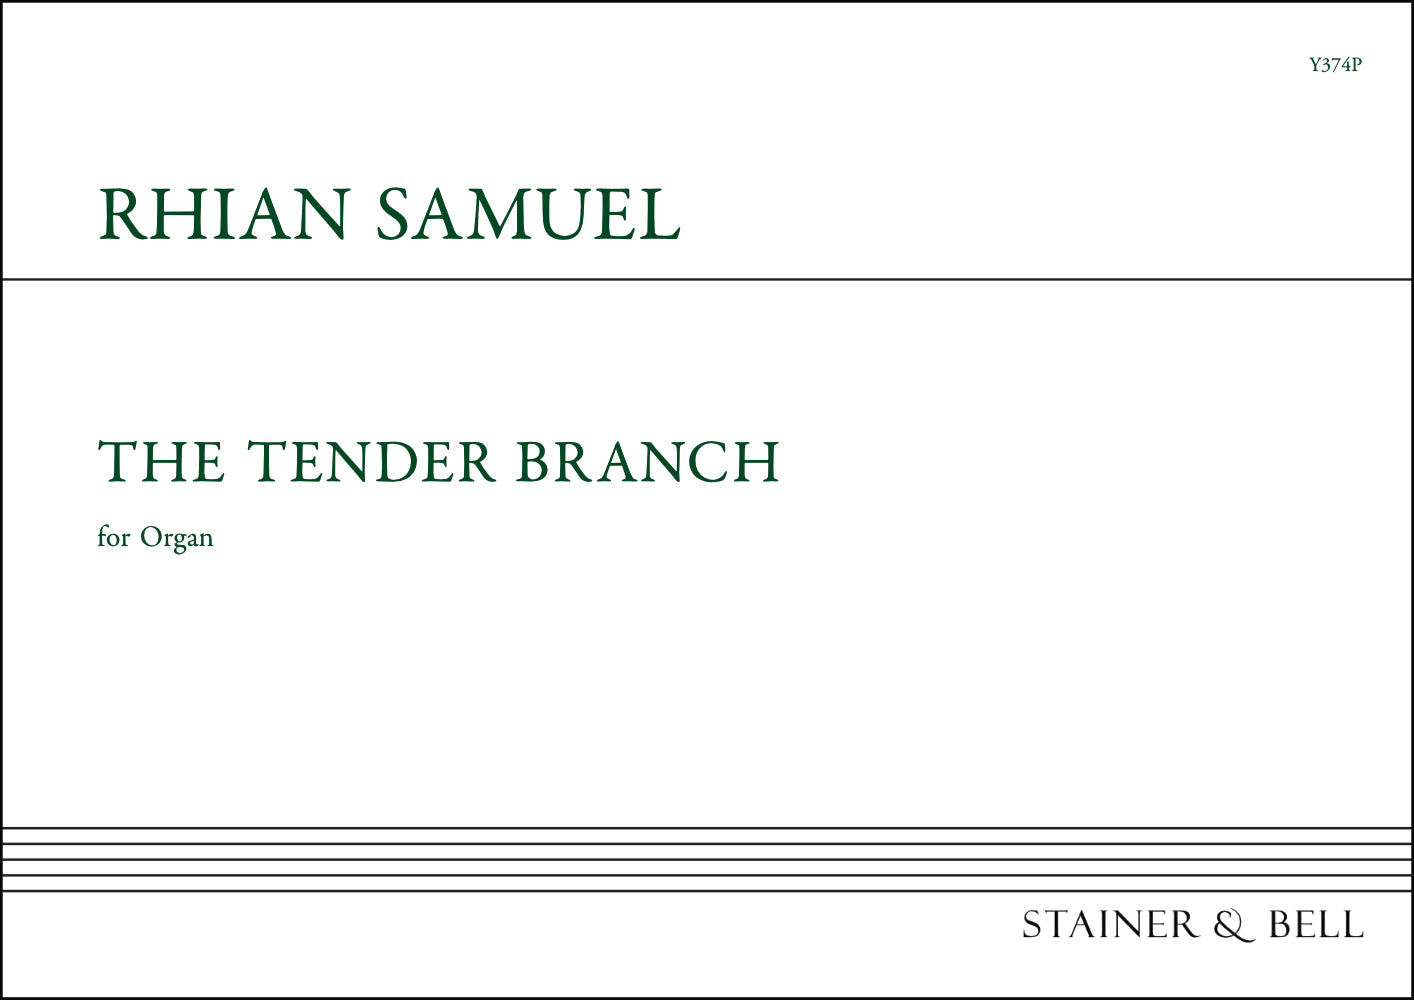 Samuel: The Tender Branch